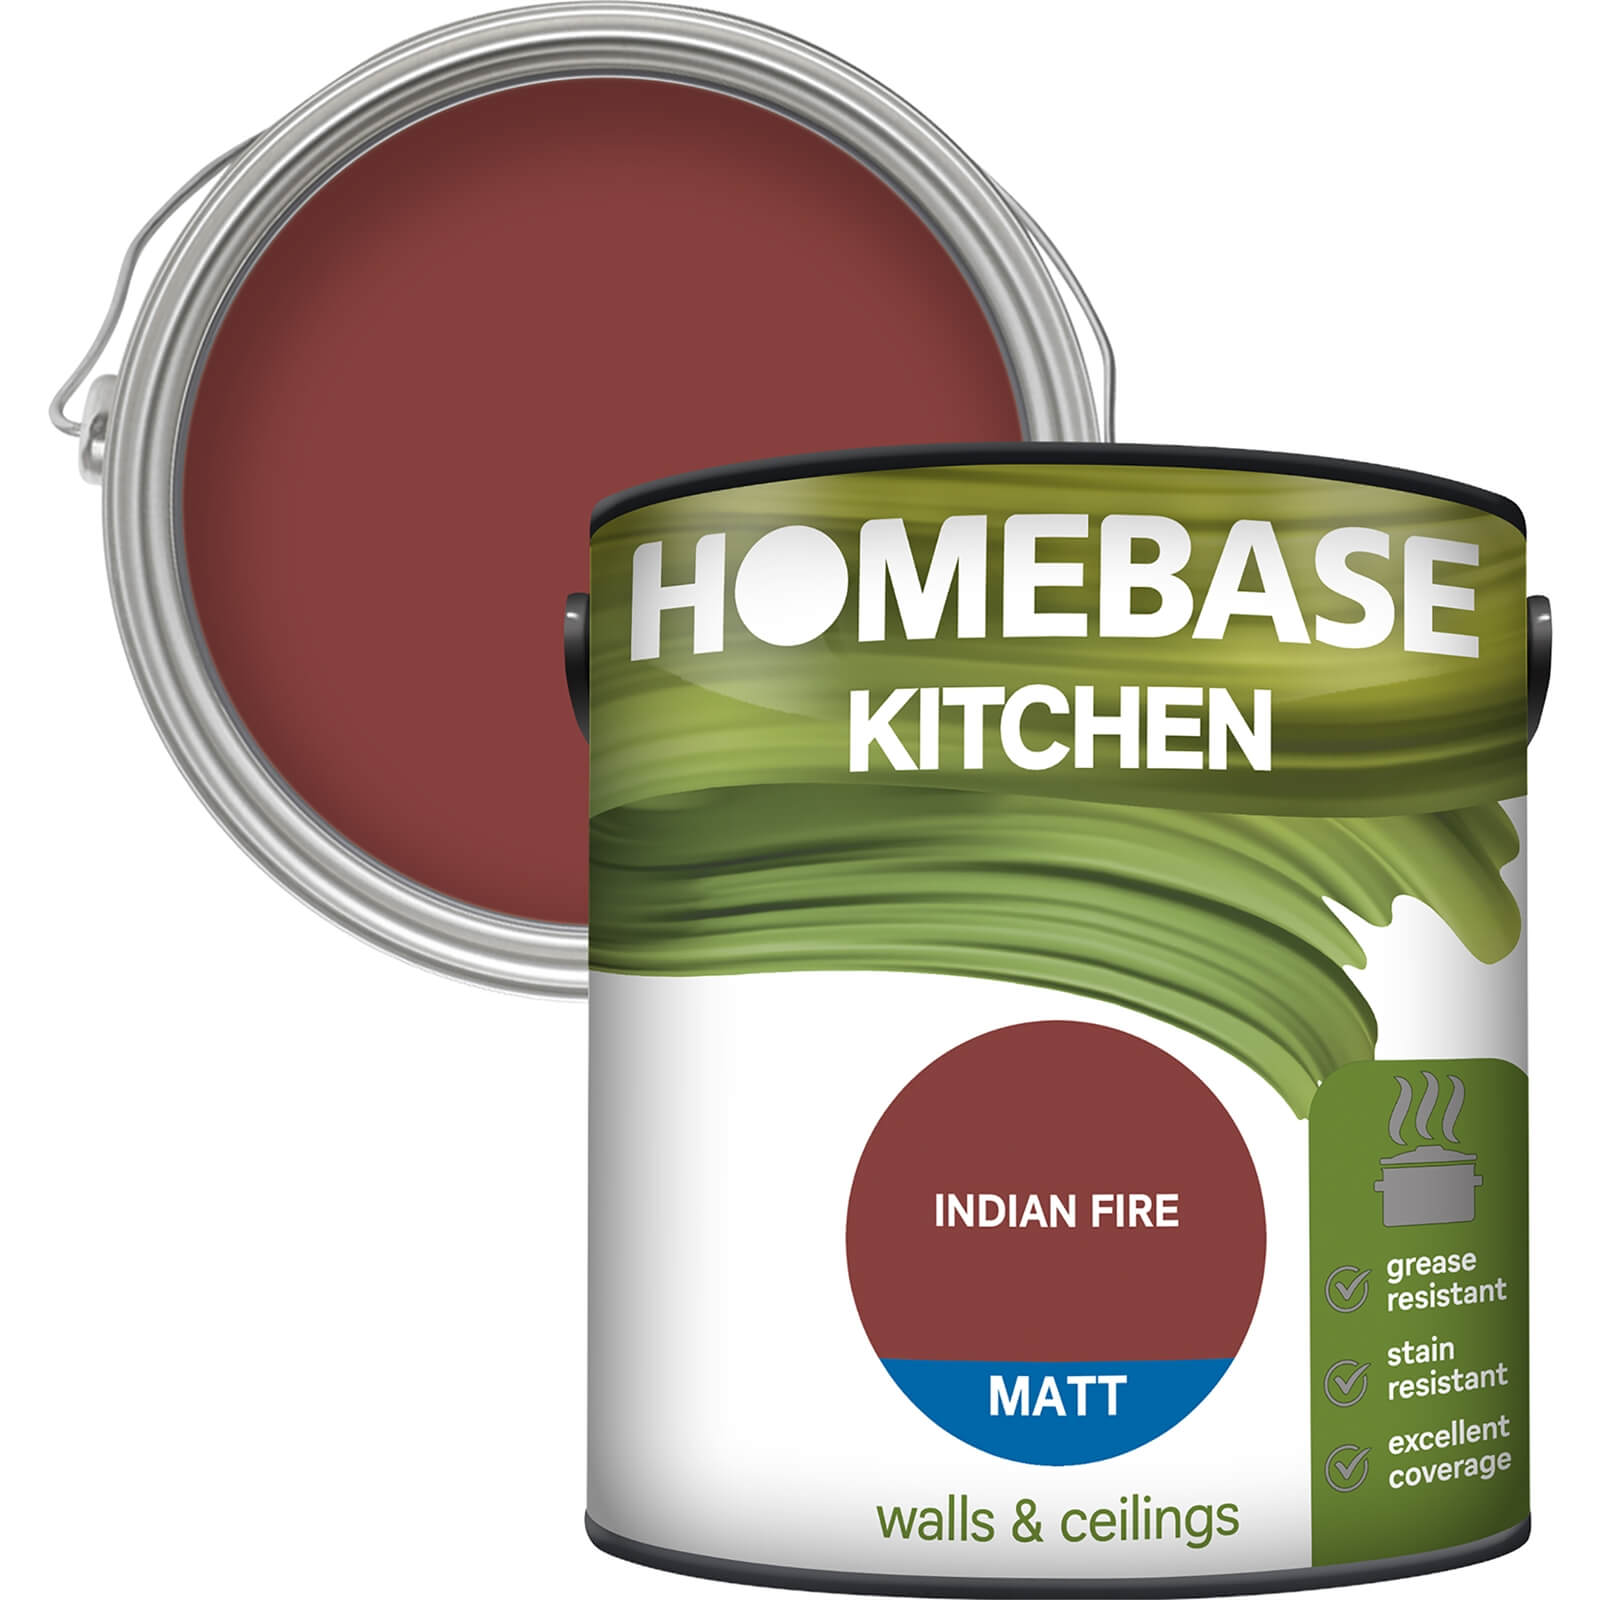 Homebase Kitchen Matt Paint - Indian Fire 2.5L